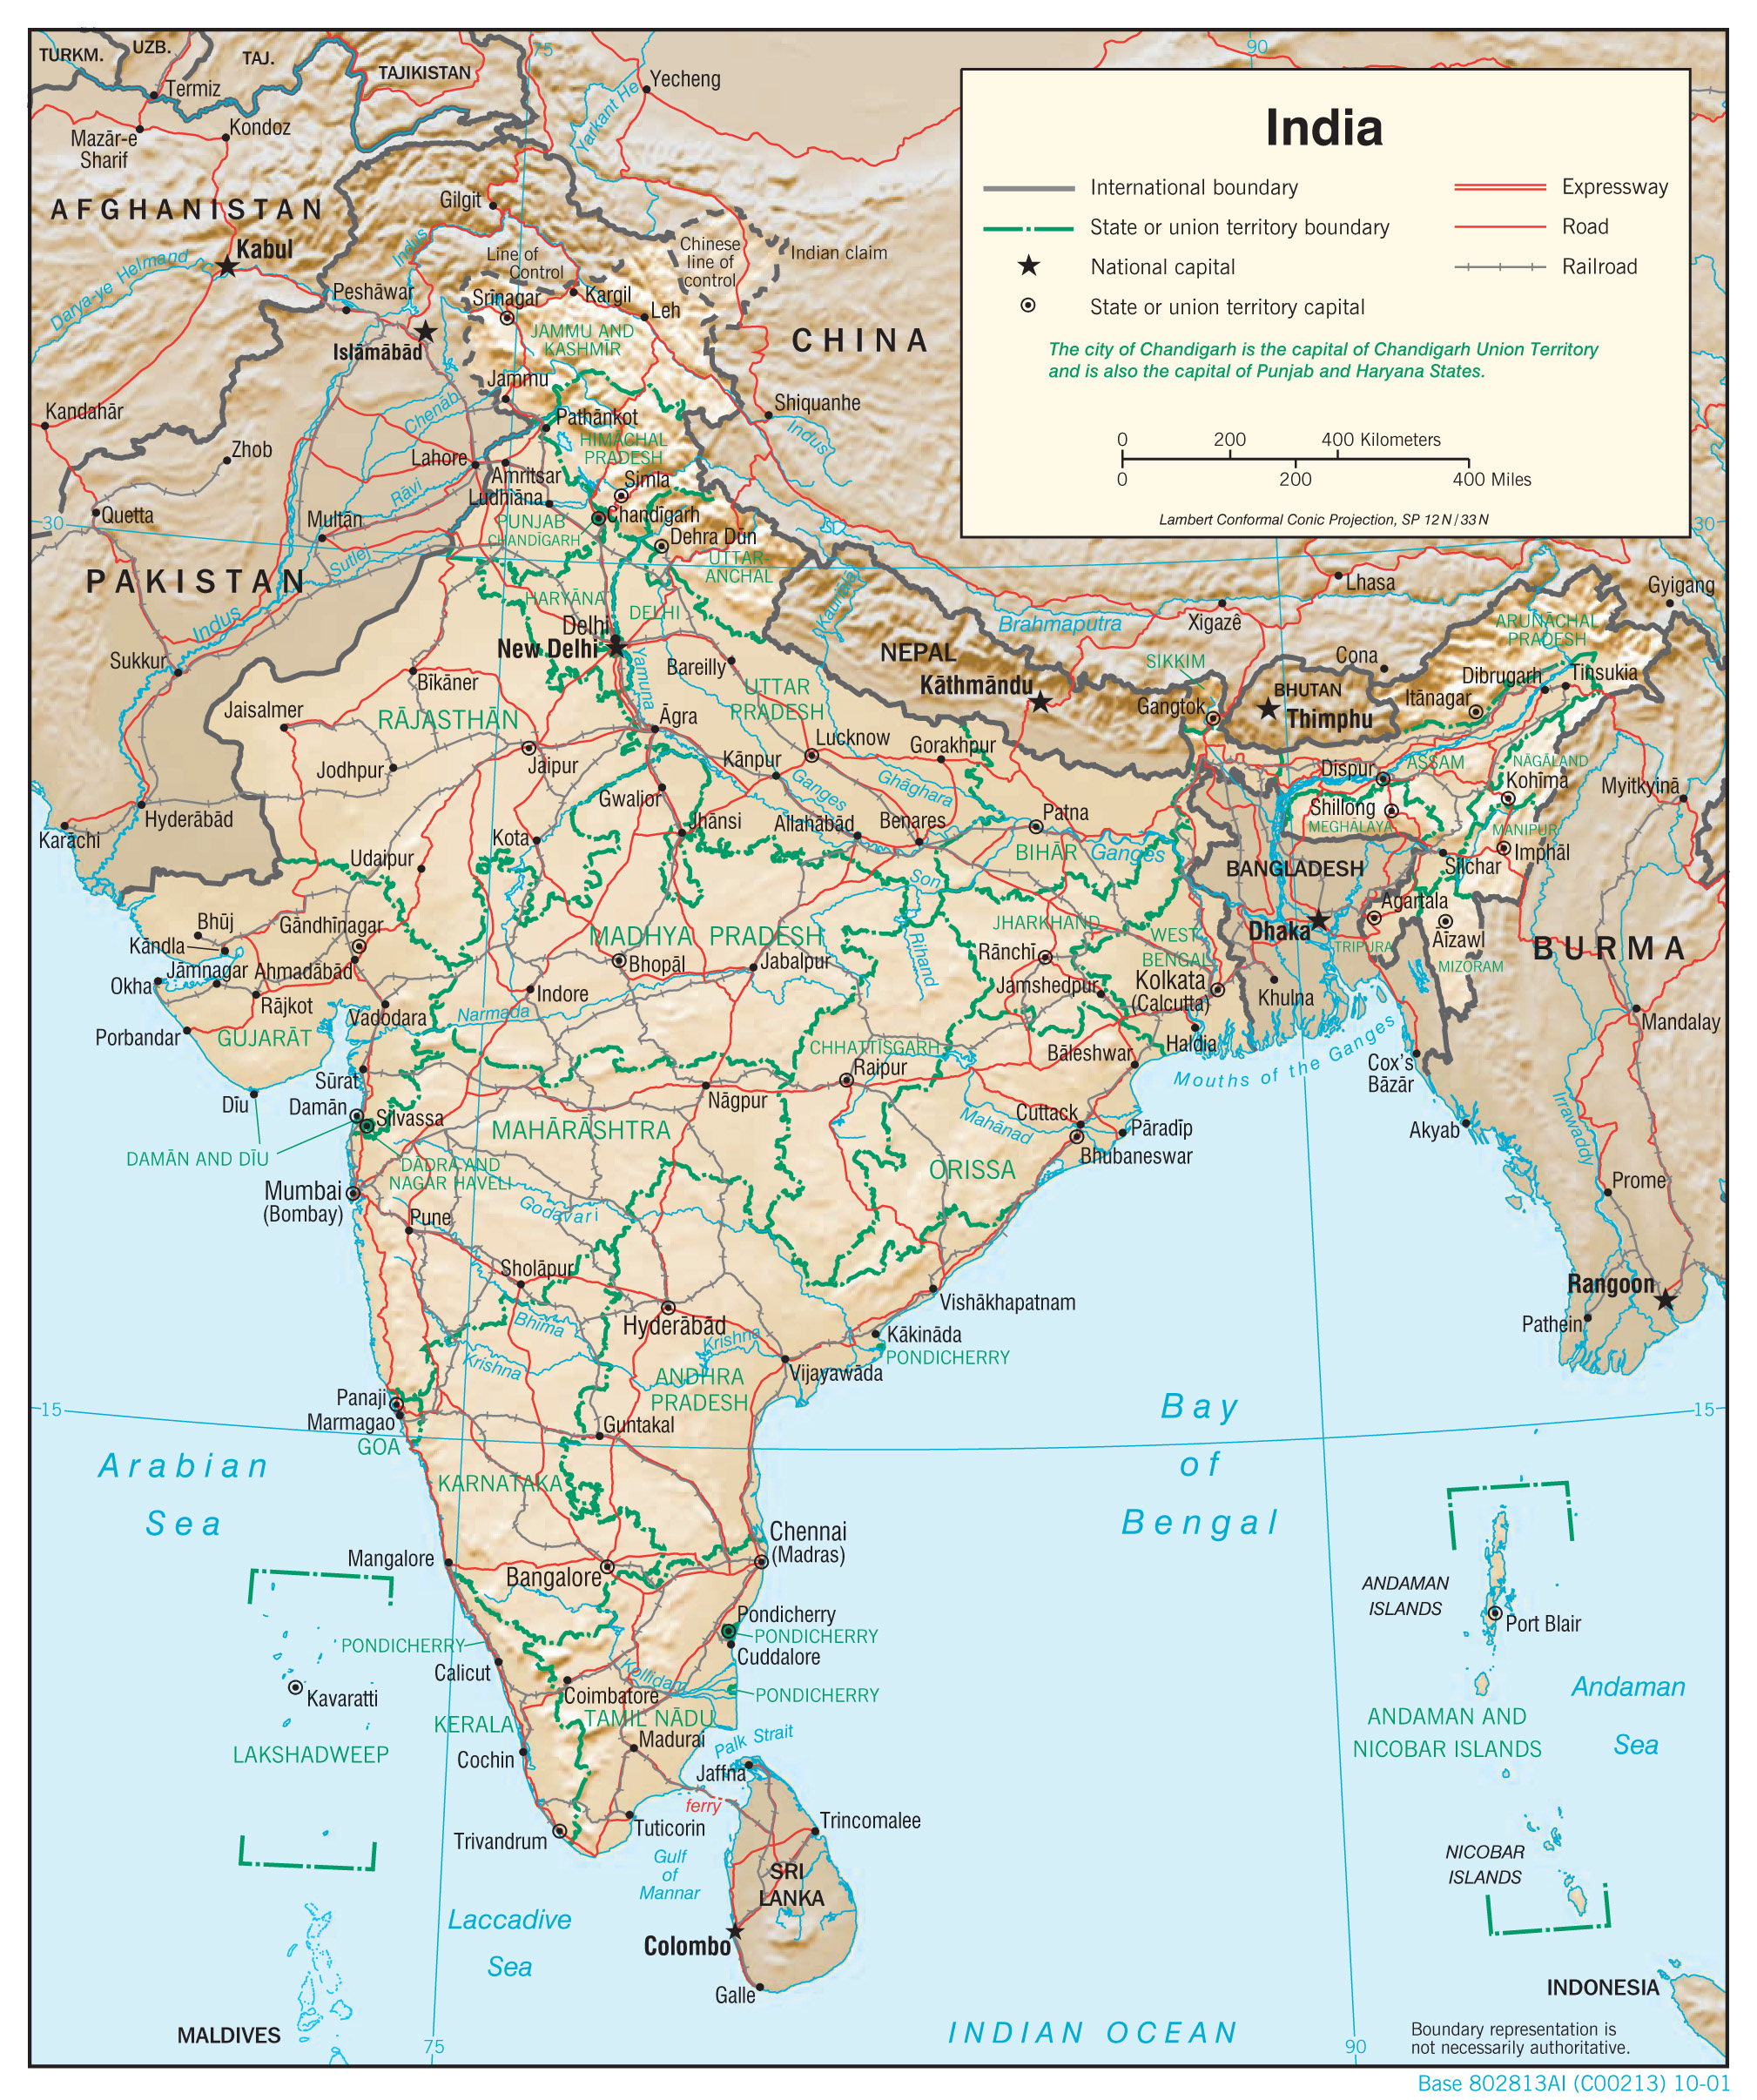 Bản đồ Ấn Độ khổ lớn 2024: 
Với bản đồ Ấn Độ khổ lớn 2024 bạn sẽ được trải nghiệm một cách thật hoành tráng. Với độ phân giải cao, bản đồ này sẽ giúp bạn nhìn thấy rõ hơn các vùng đất đa dạng và phong phú của đất nước Ấn Độ. Từ vùng sa mạc Rajathan, đến đồi núi Himalaya cao ngất ngưỡng, hay những bờ biển dài đẹp như tranh vẽ,... Bạn sẽ không thể rời mắt khỏi bản đồ này!